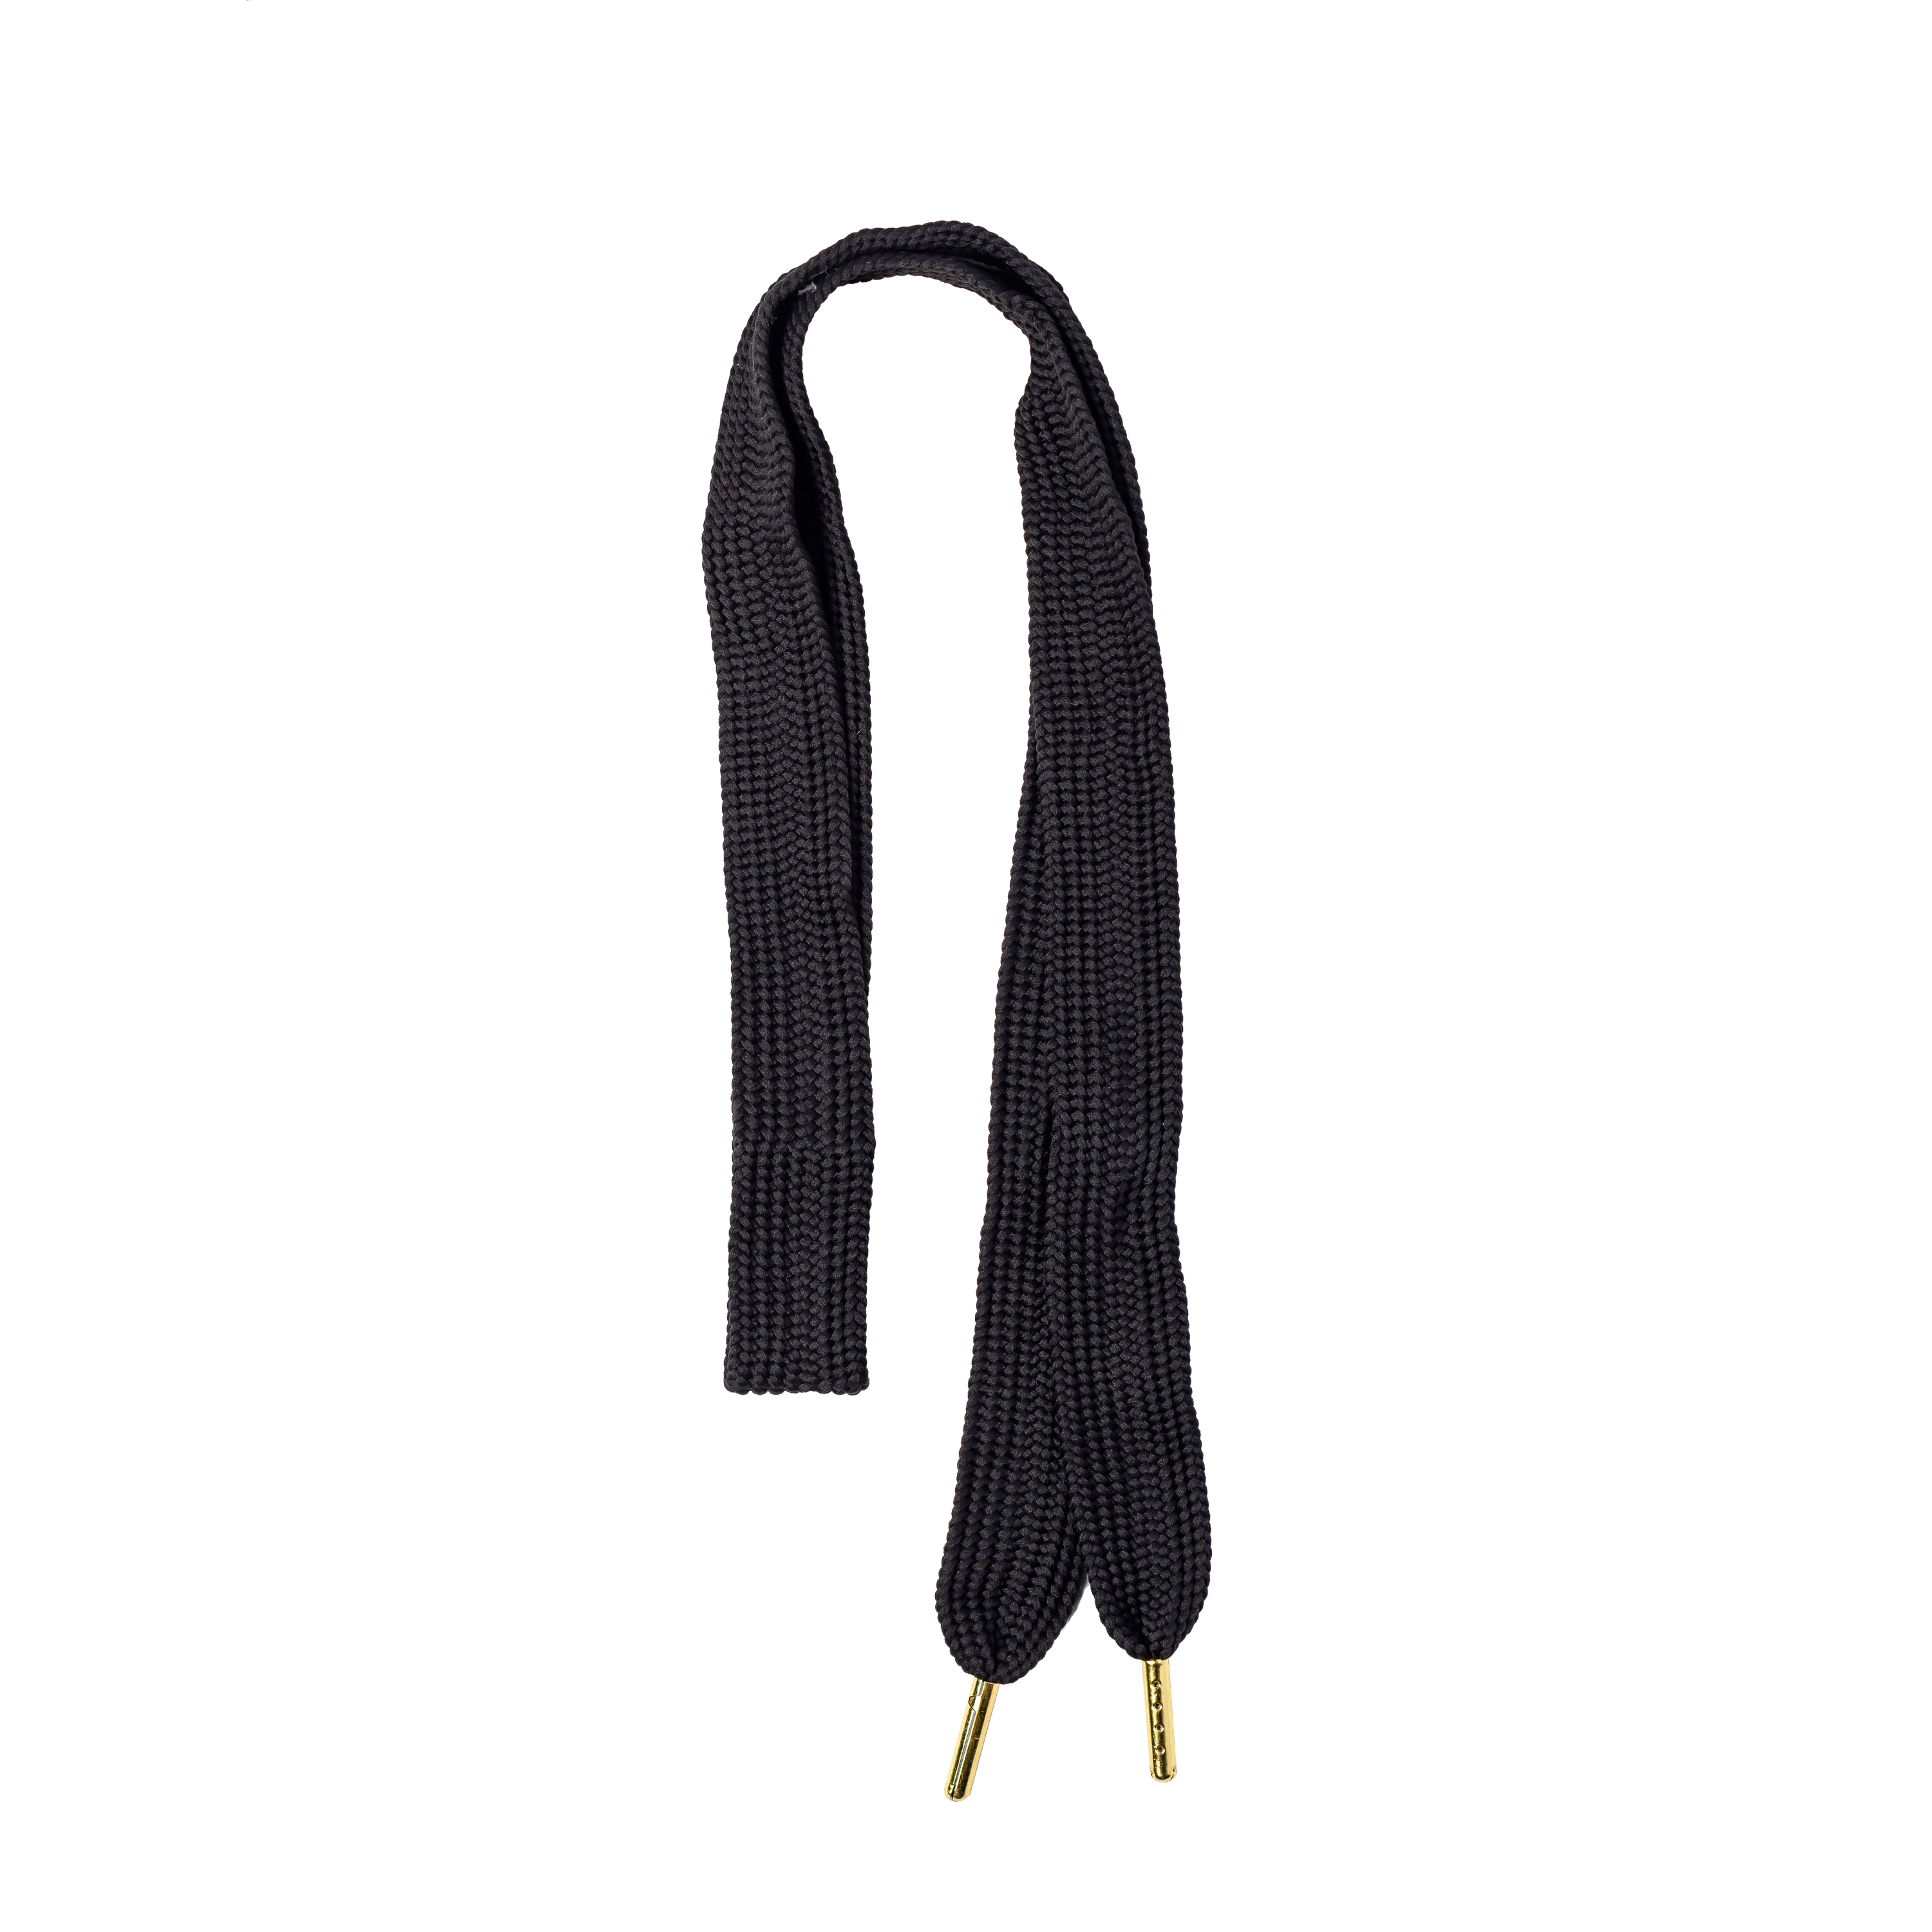 Shoelace Hair Ties- Black